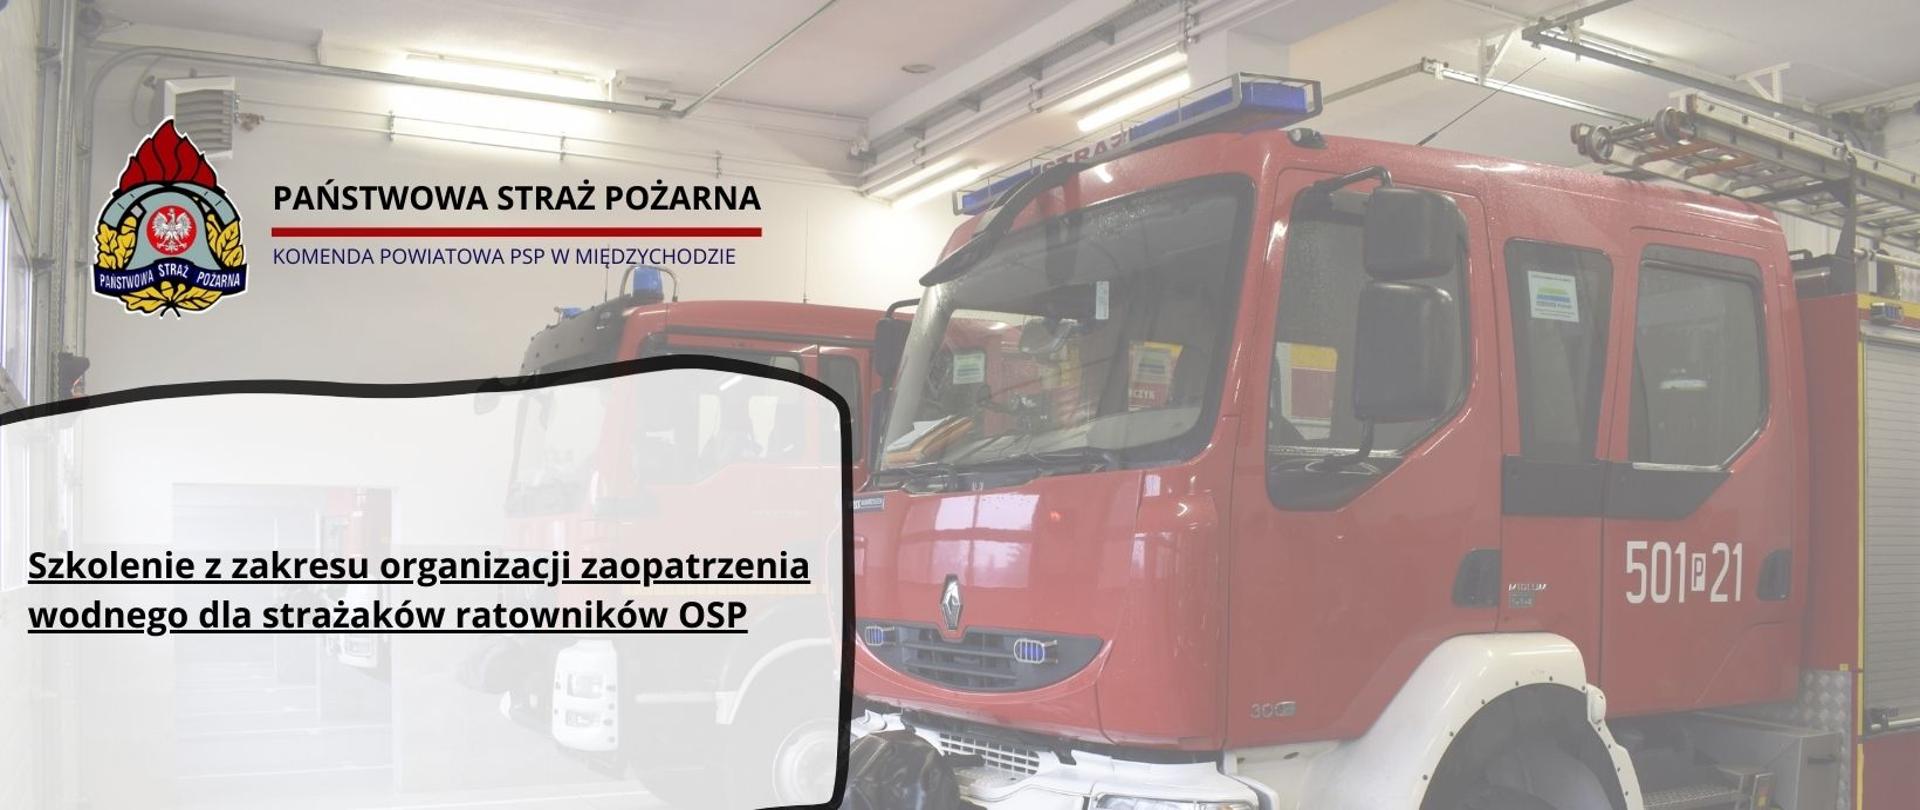 Grafika z napisem: "Szkolenie z zakresu organizacji zaopatrzenia wodnego dla strażaków ratowników OSP"